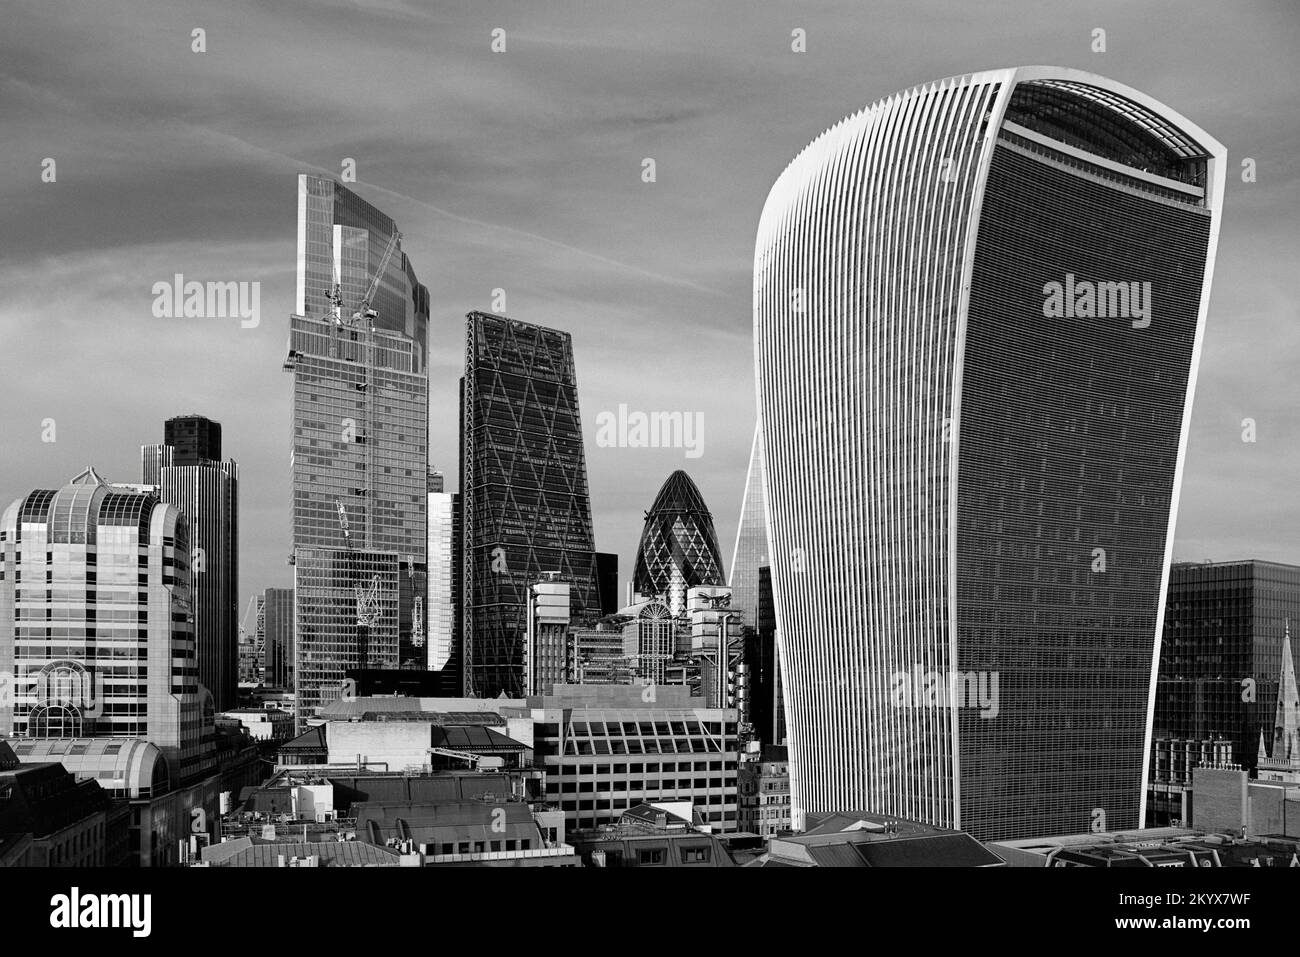 Lo skyline della città di Londra si vede dal Monumento, con la Walkie Talkie Tower, il Leadenhall Building, il Gherkin e la NatWest Tower. Foto Stock